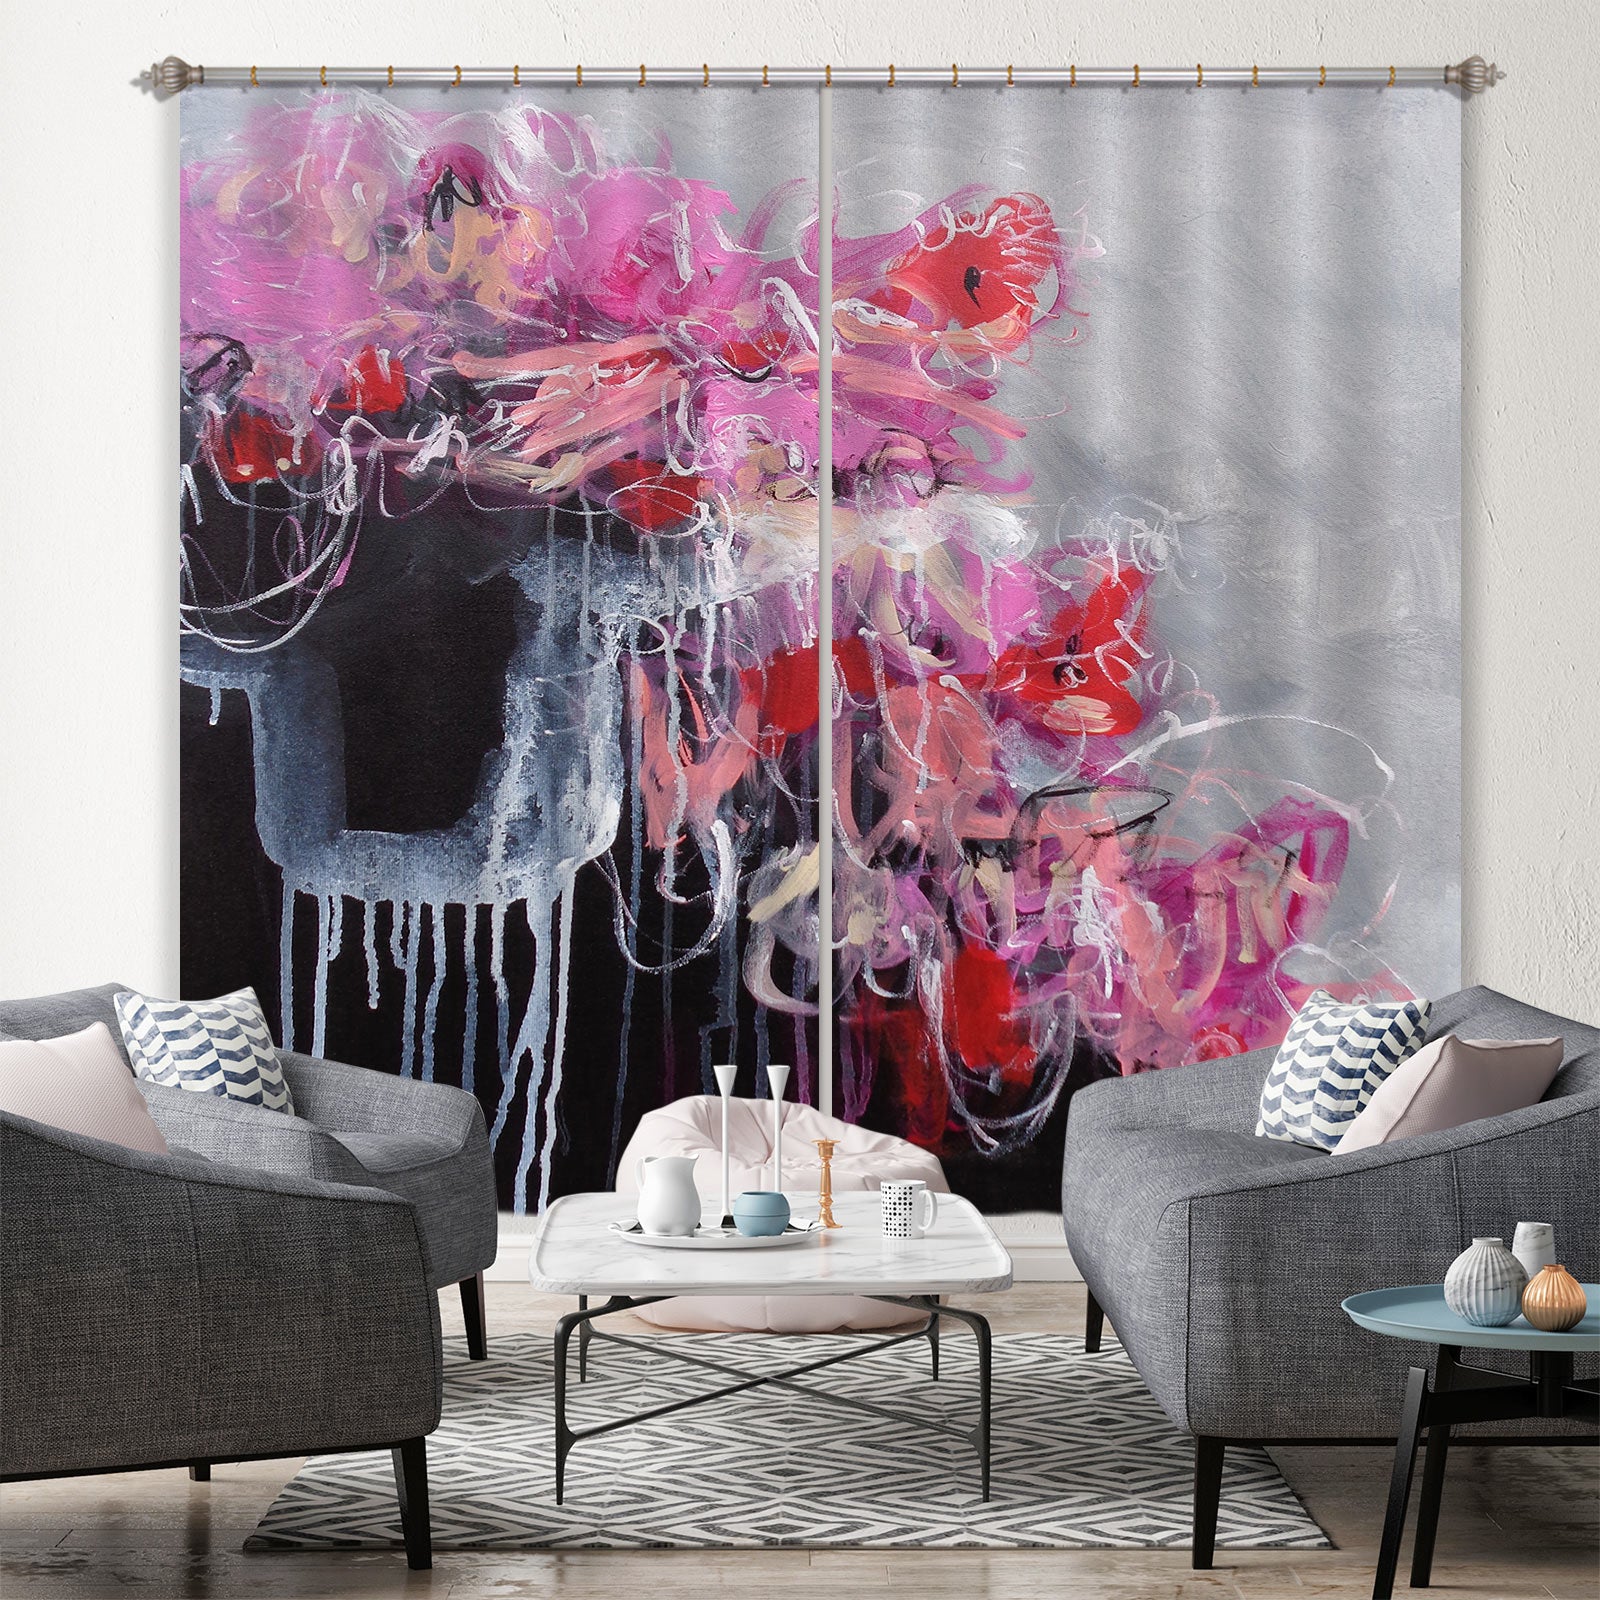 3D Pink Graffiti 2431 Misako Chida Curtain Curtains Drapes